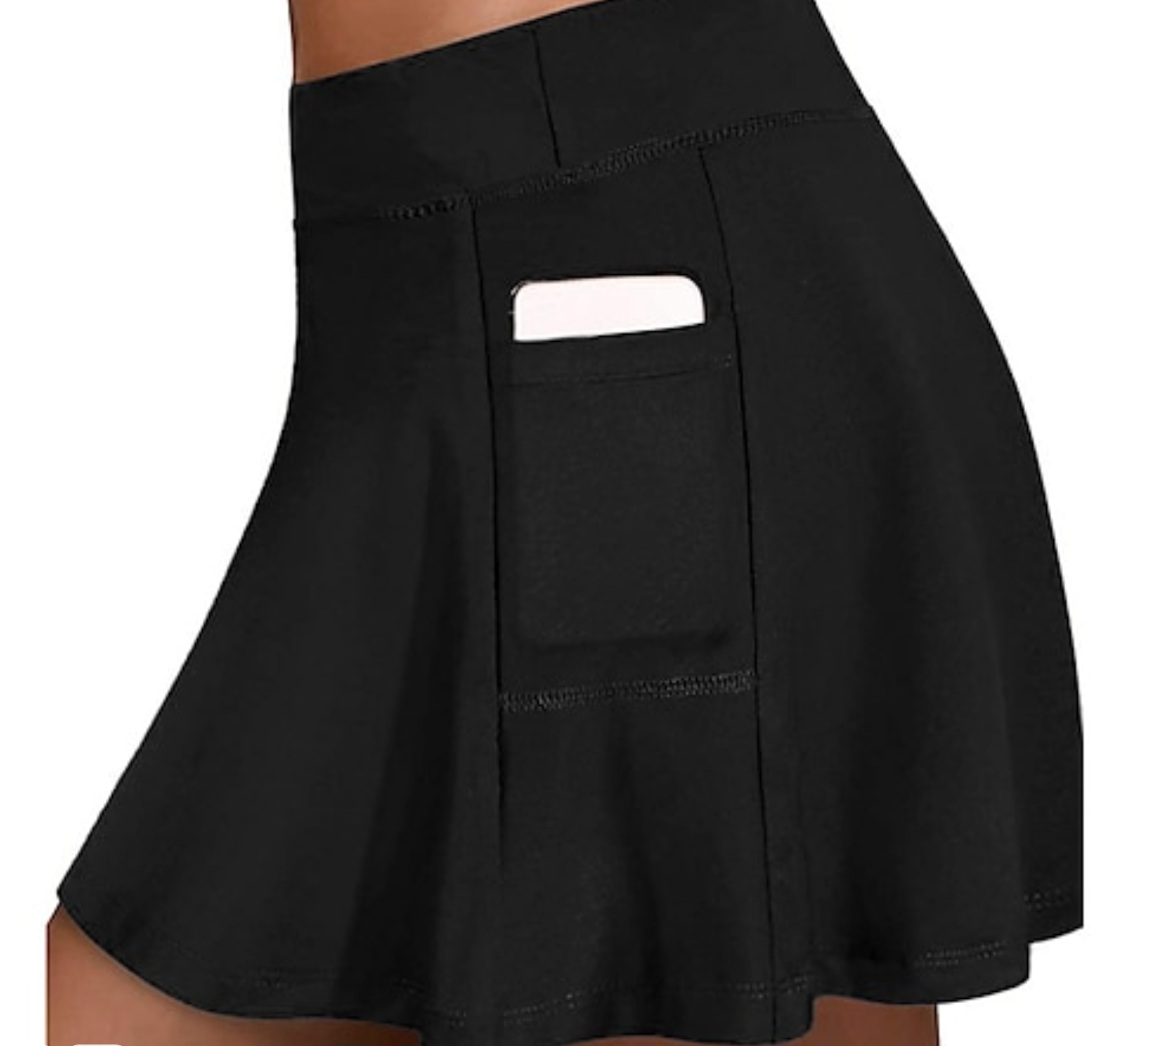 Little Black Skirt